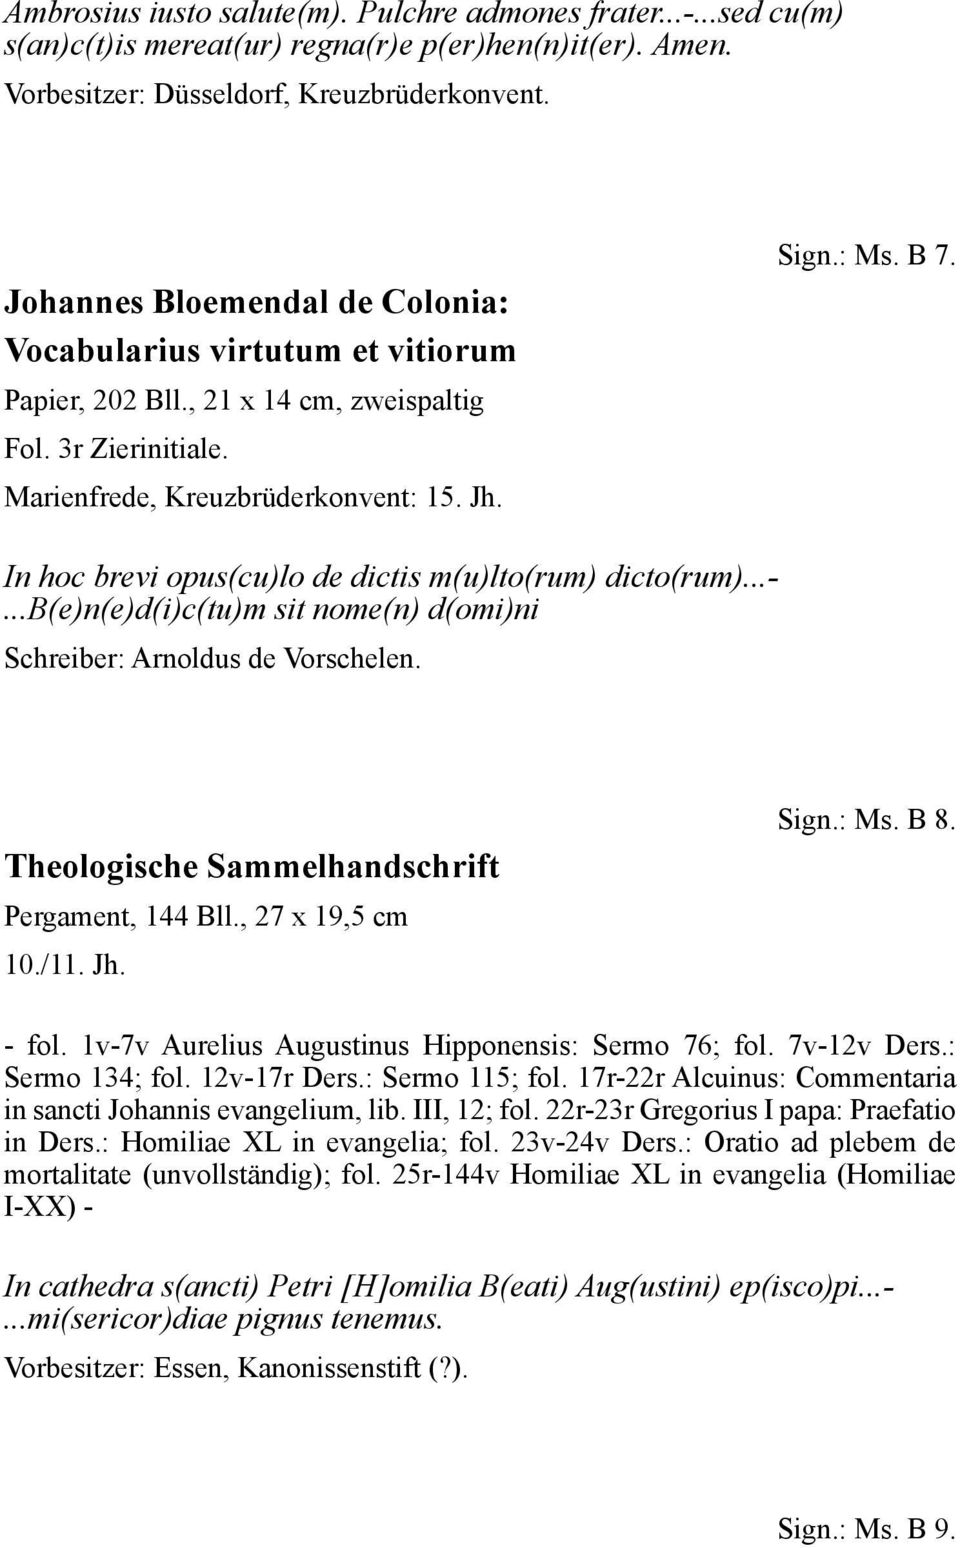 In hoc brevi opus(cu)lo de dictis m(u)lto(rum) dicto(rum)...-...b(e)n(e)d(i)c(tu)m sit nome(n) d(omi)ni Schreiber: Arnoldus de Vorschelen. Theologische Sammelhandschrift Pergament, 144 Bll.